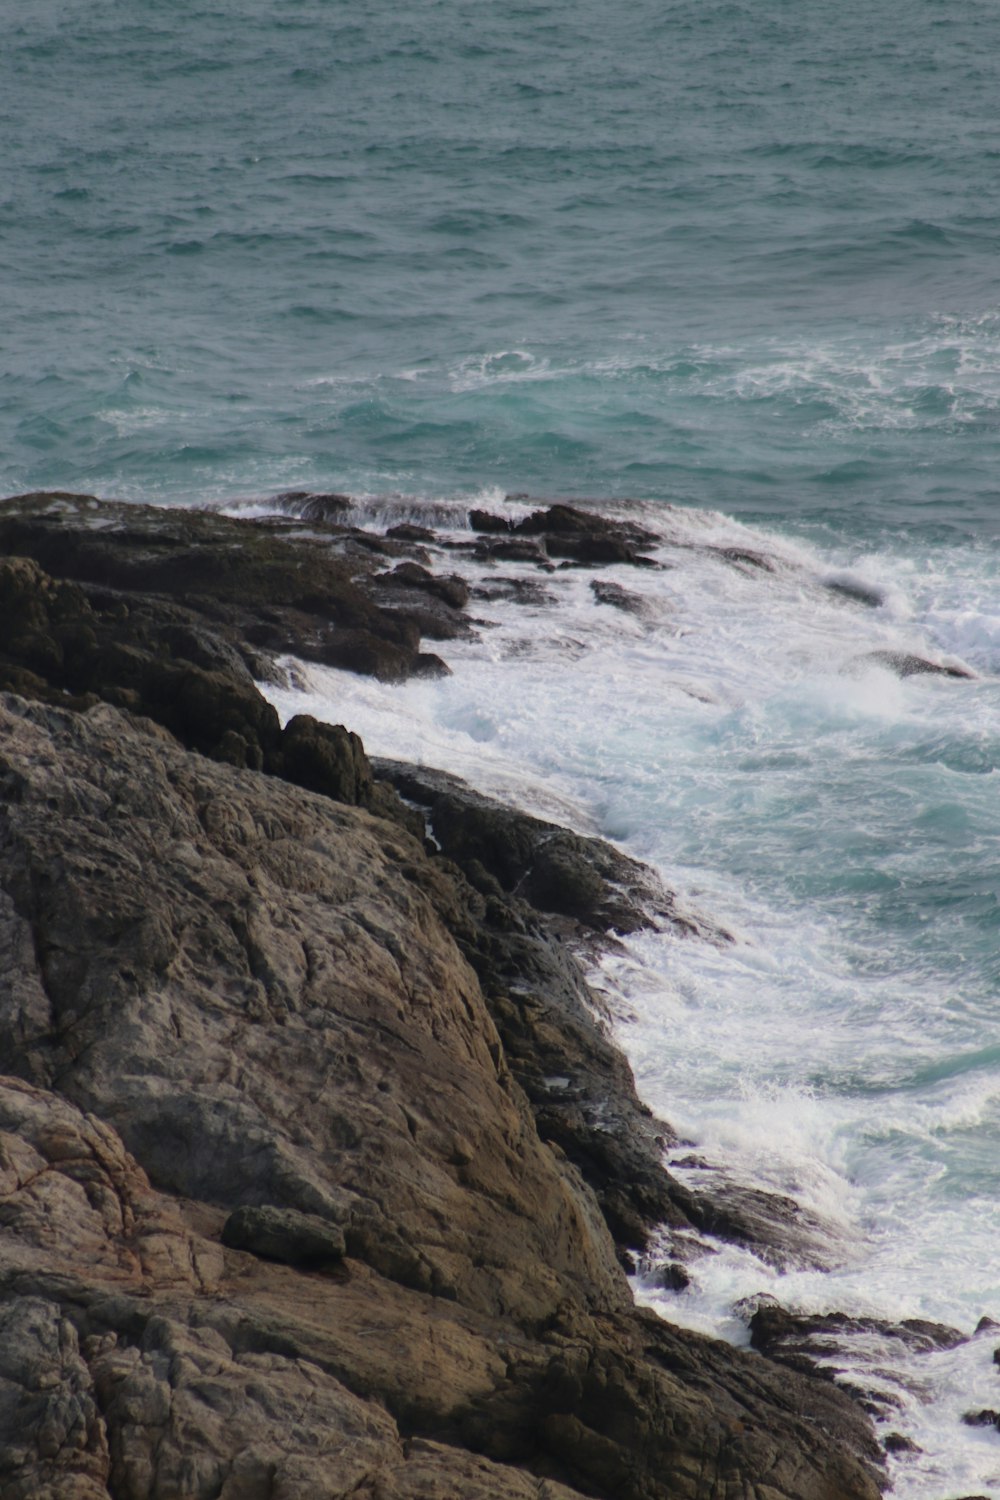 Costa rocciosa marrone con onde dell'oceano che si infrangono sulla riva durante il giorno